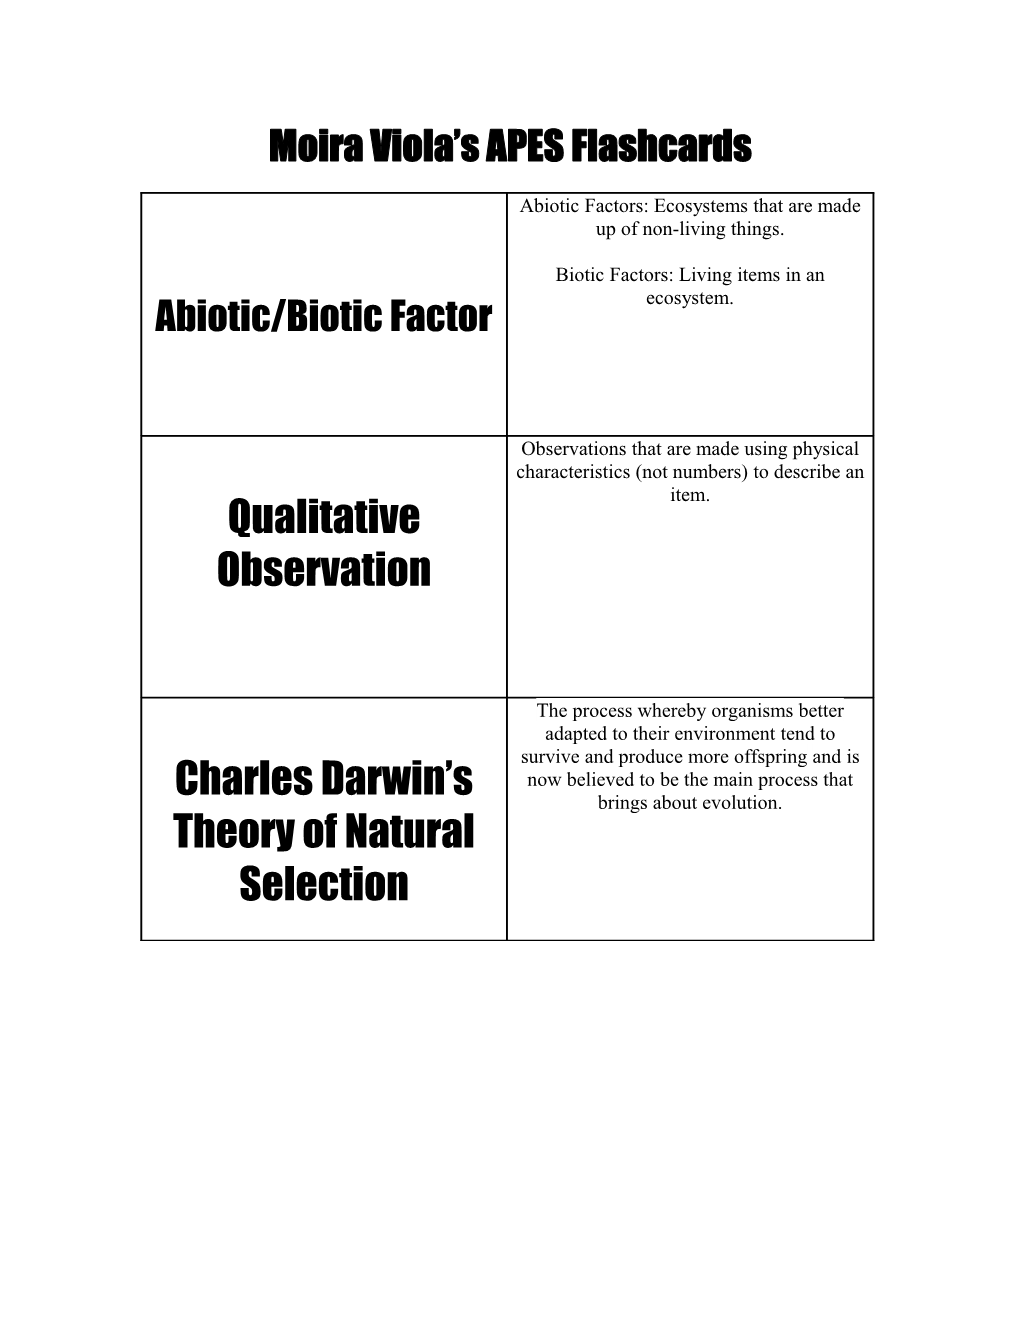 Abiotic/Biotic Factor